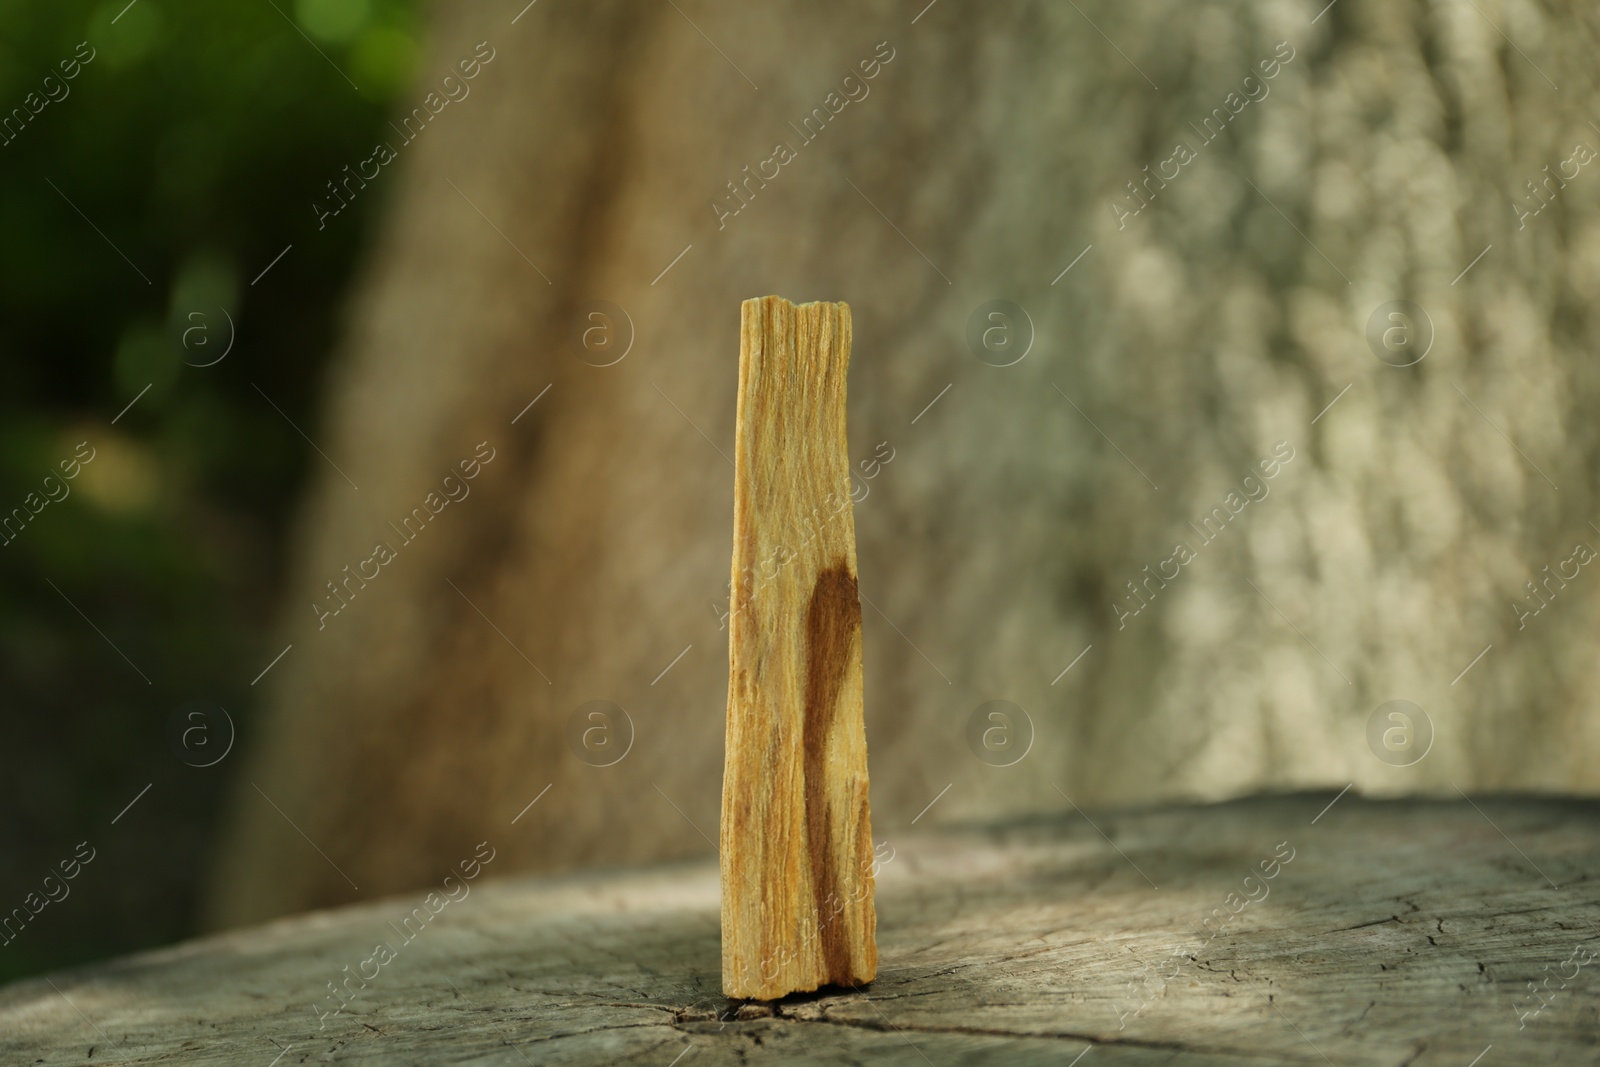 Photo of Palo santo stick on wooden stump outdoors